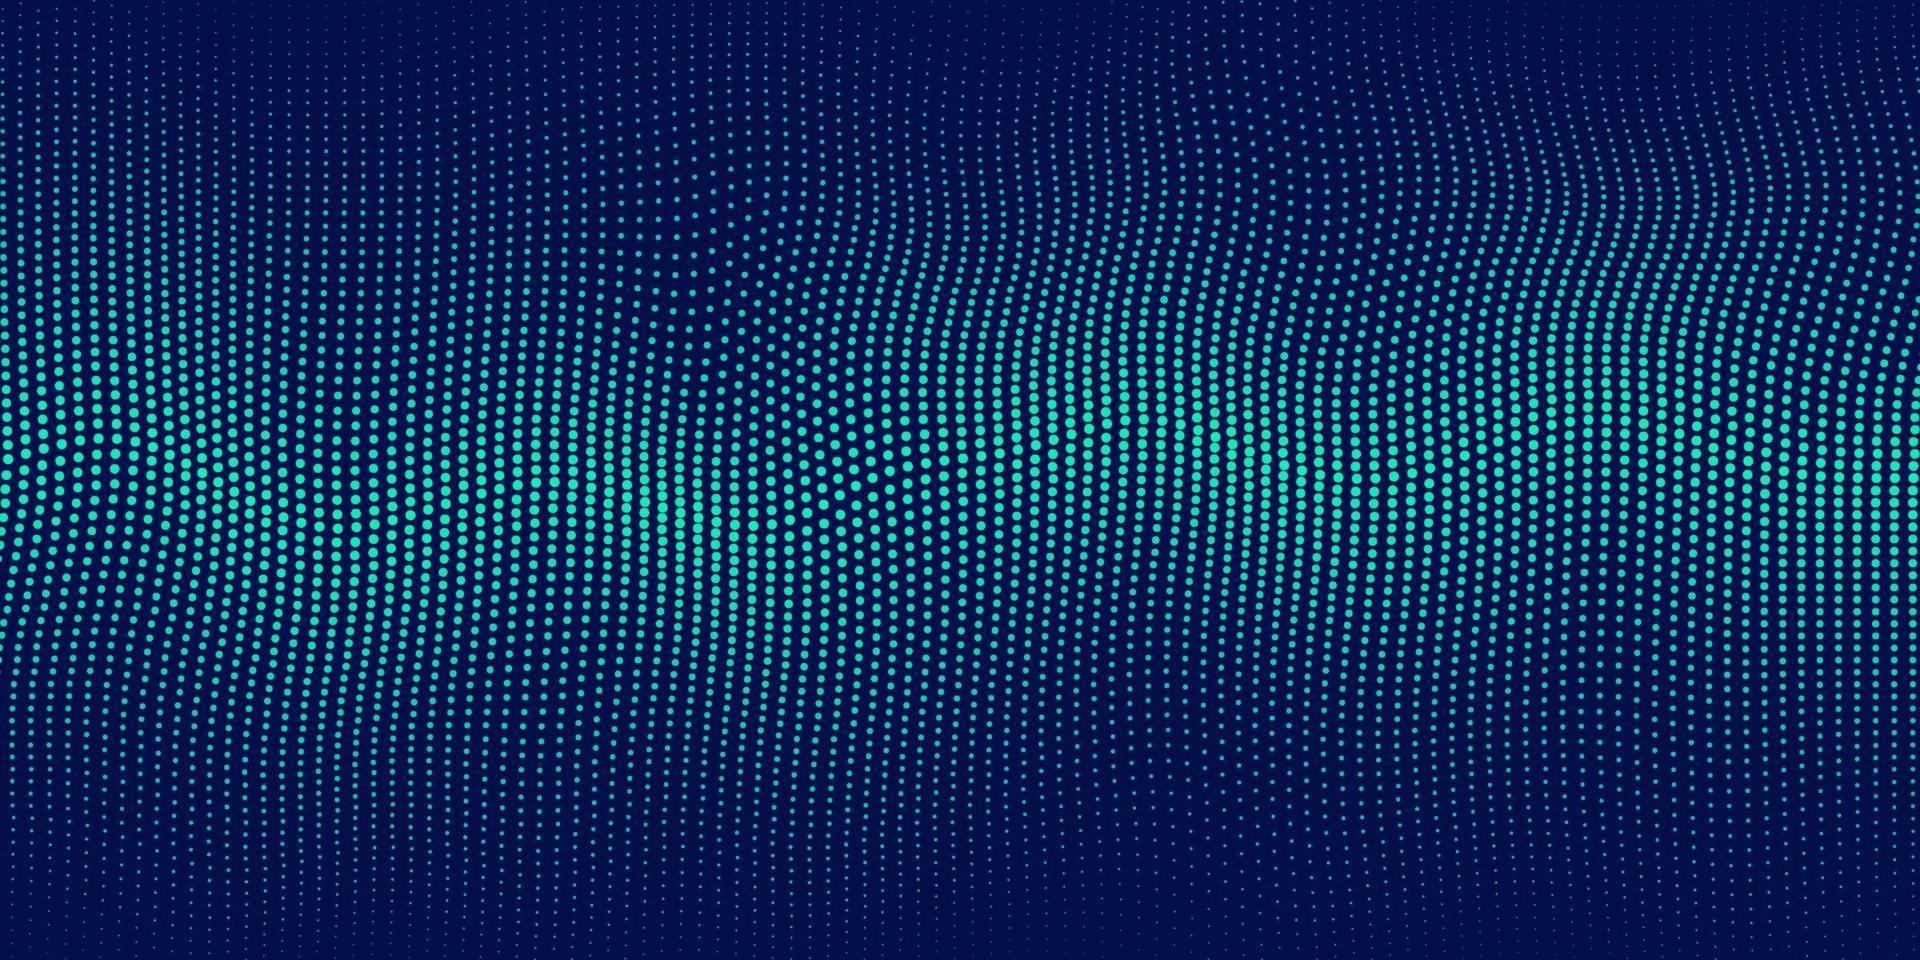 abstracte golvende stippen patroon banner ontwerp met kopie ruimte. technologie groene, blauwe deeltjes 3D-beweging van geluid dynamisch op donkerblauwe achtergrond. modern futuristisch concept. vector illustratie